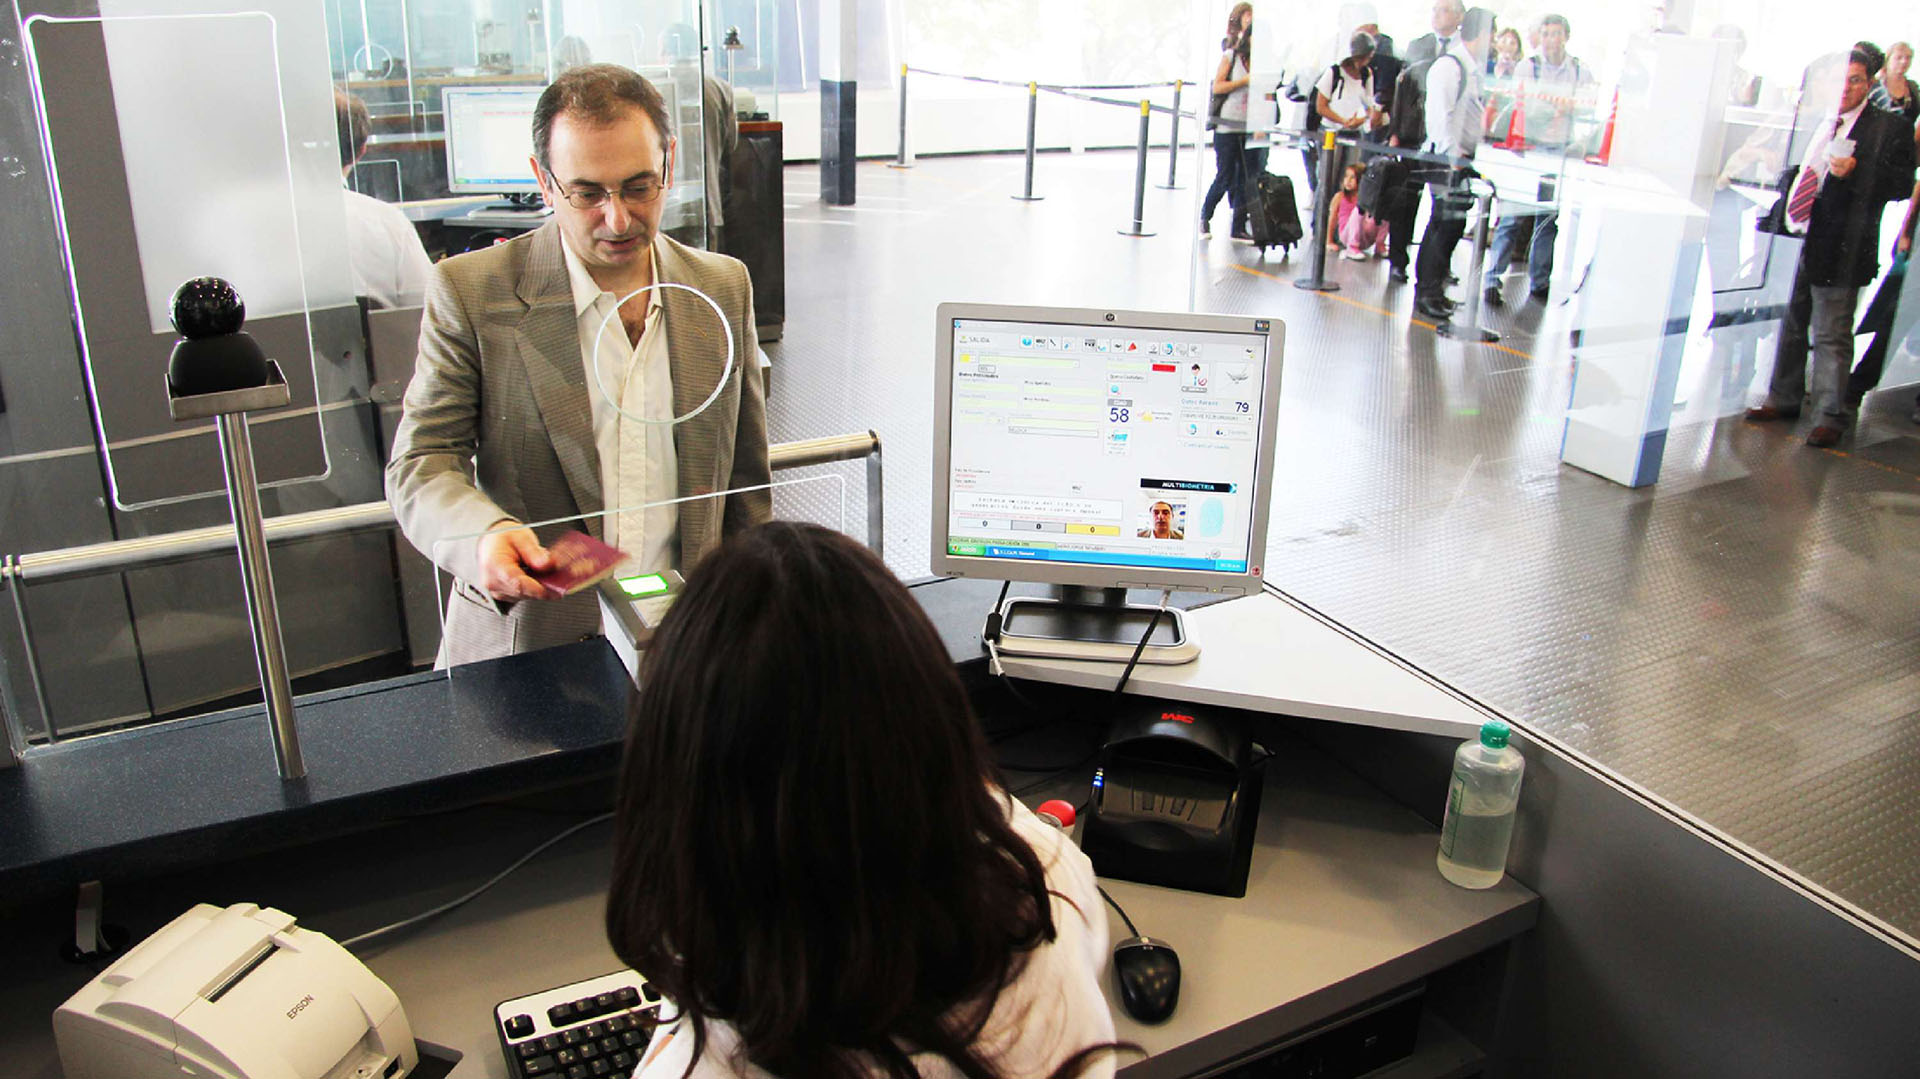 El Pasaporte es necesario para realizar viajes fuera de Argentina, excepto a países del MERCOSUR ampliado donde puede ingresarse sólo con el DNI argentino vigente